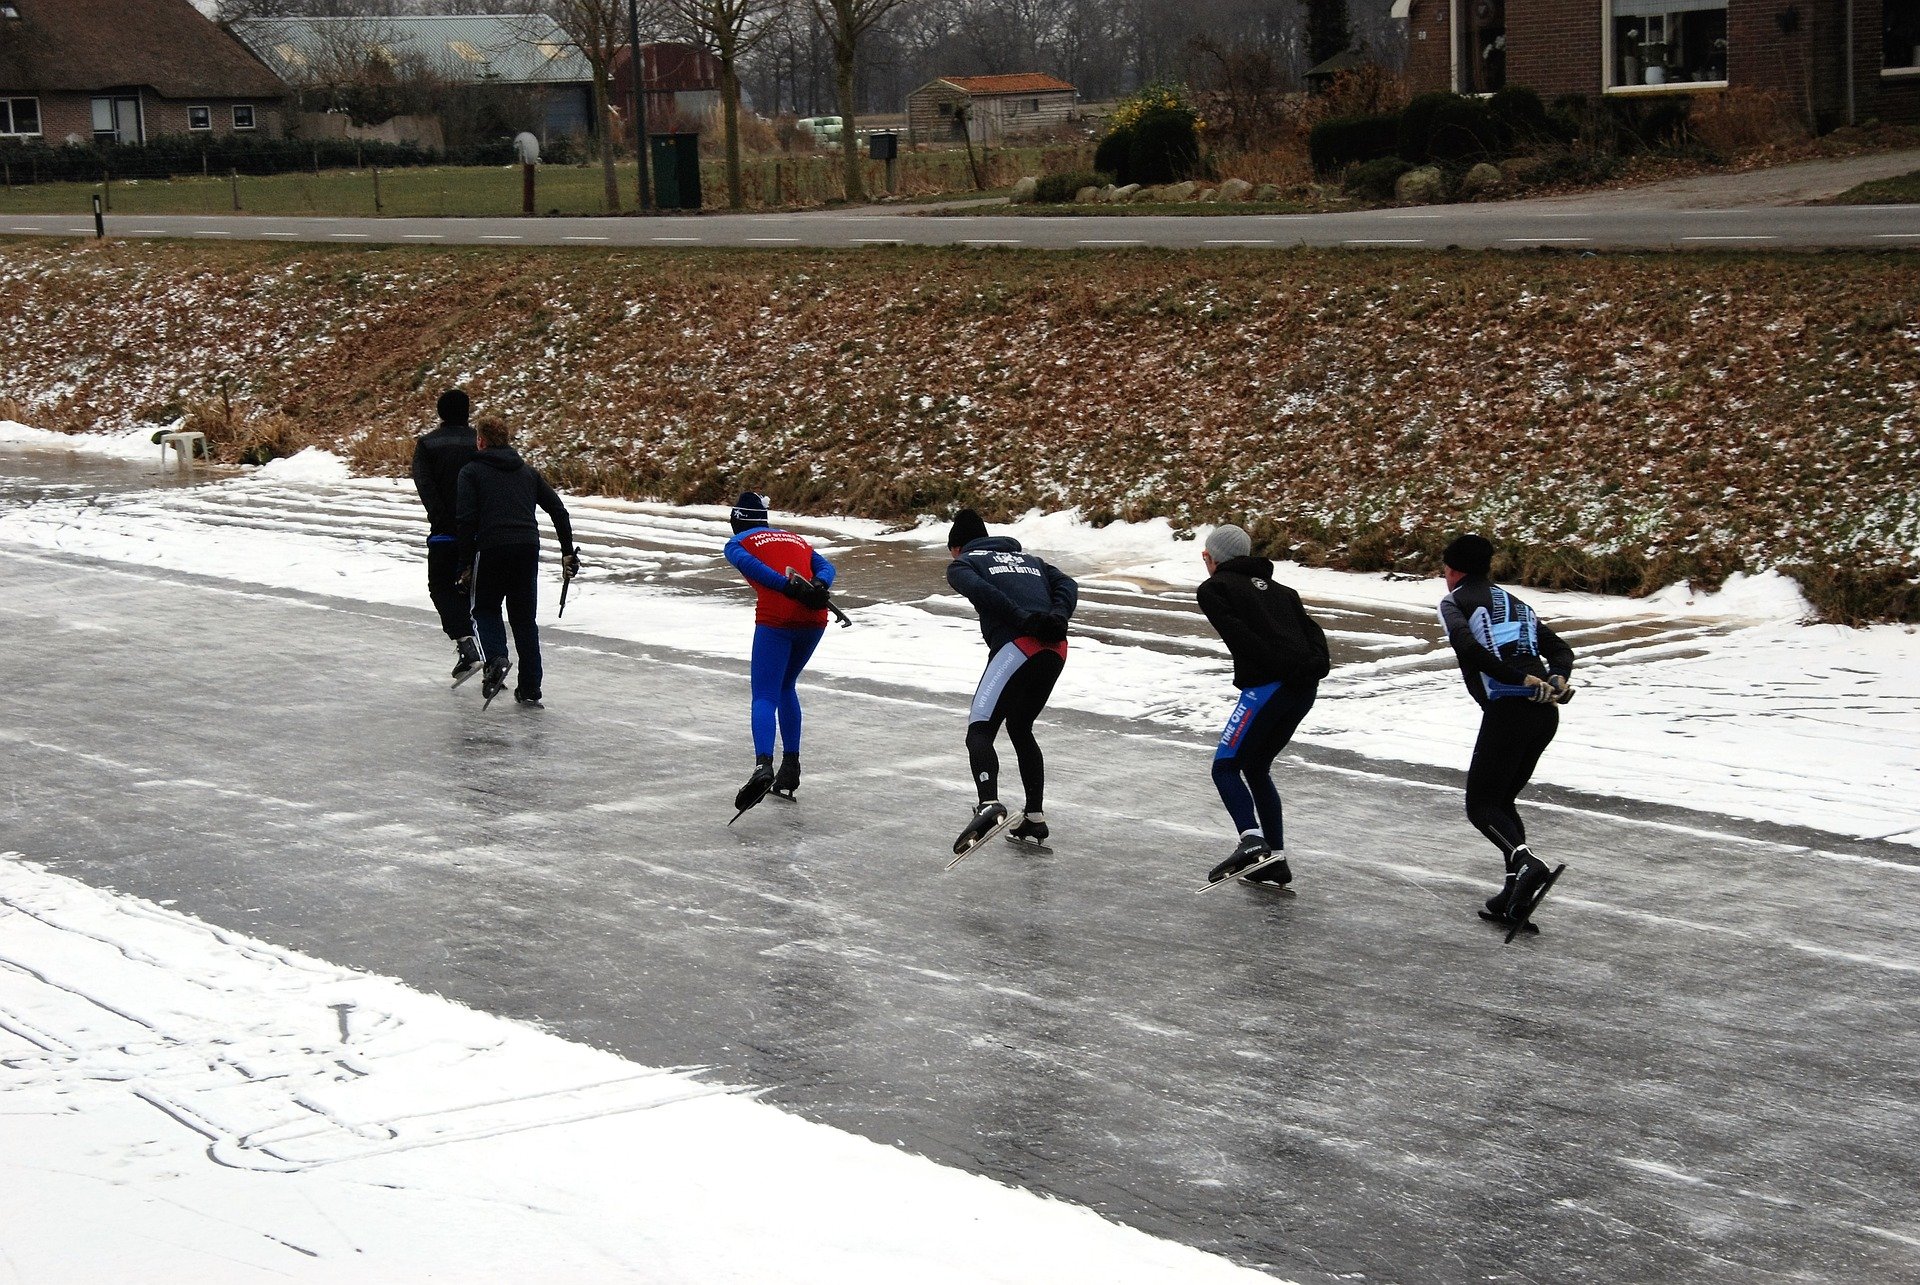 schaatsers